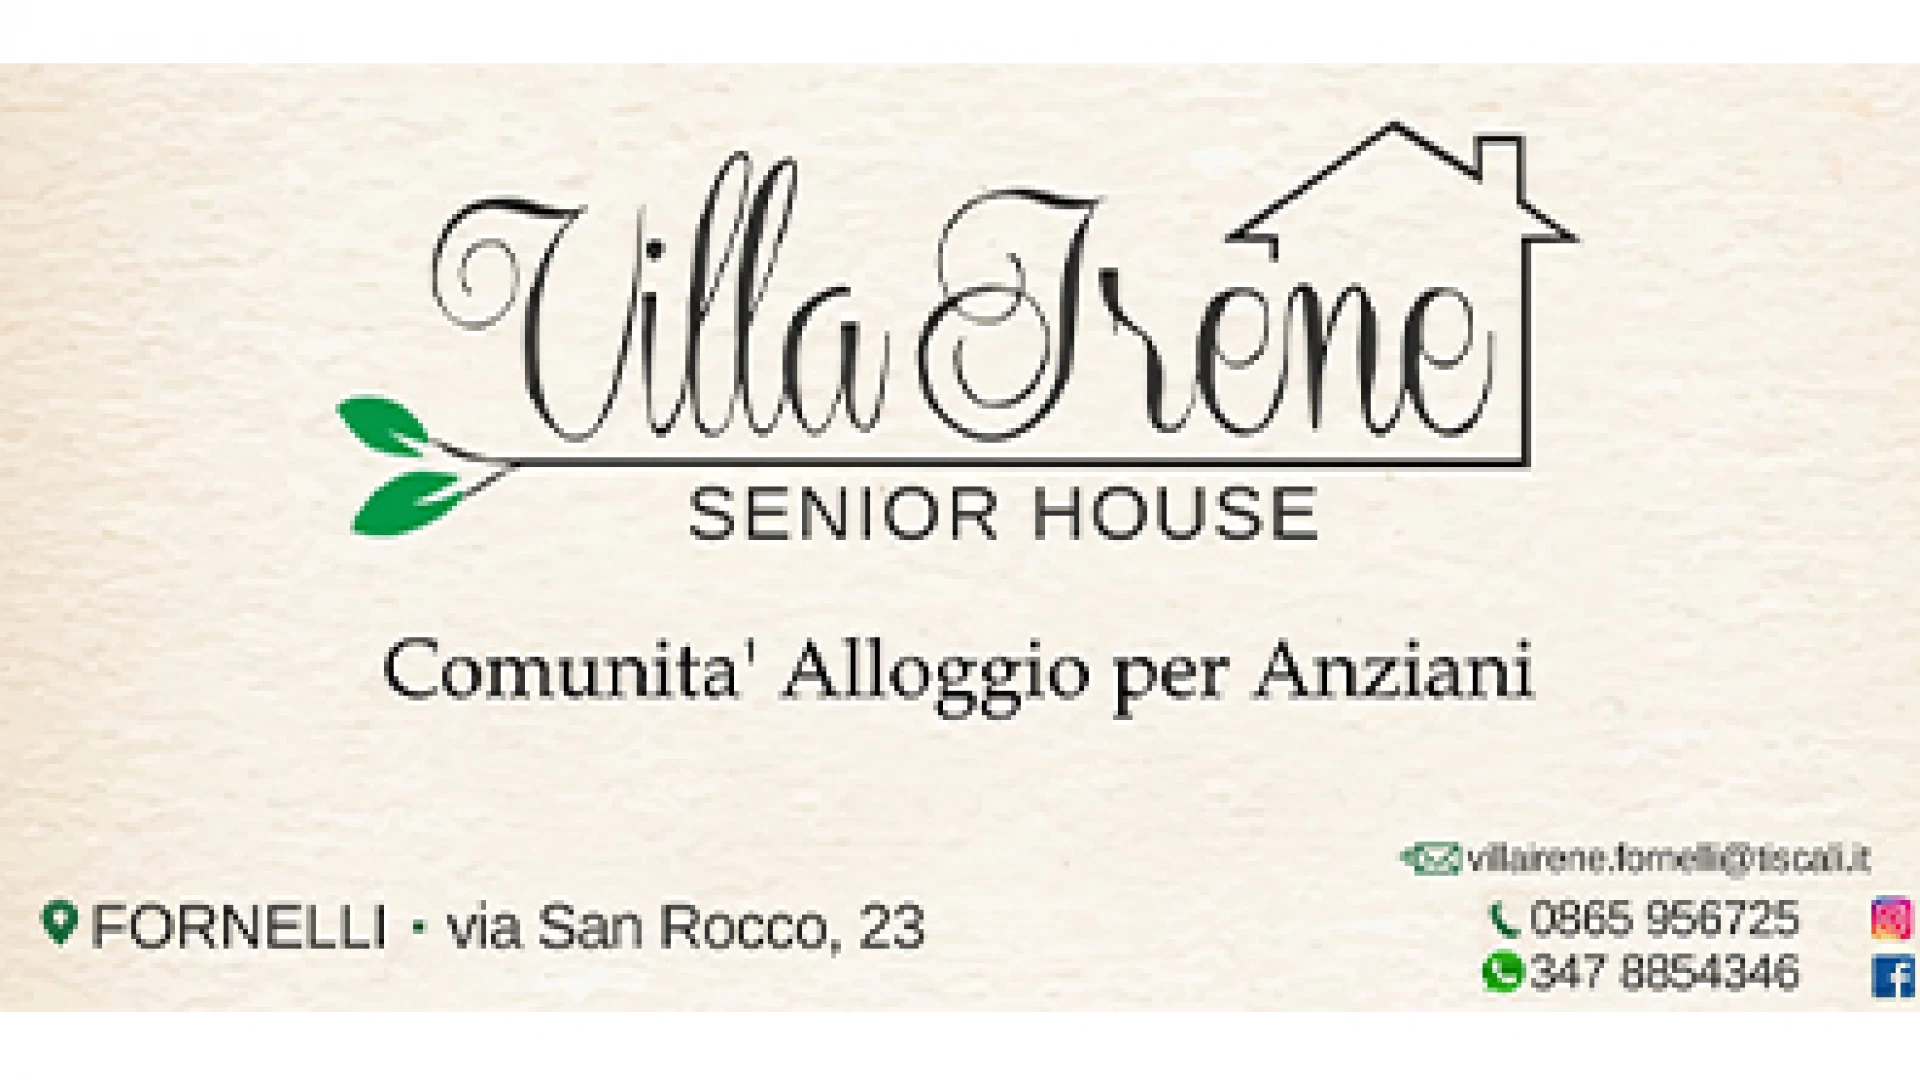 Fornelli: a Villa Irene cordialità, professionalità e servizi innovativi per un soggiorno di qualità per gli anziani.